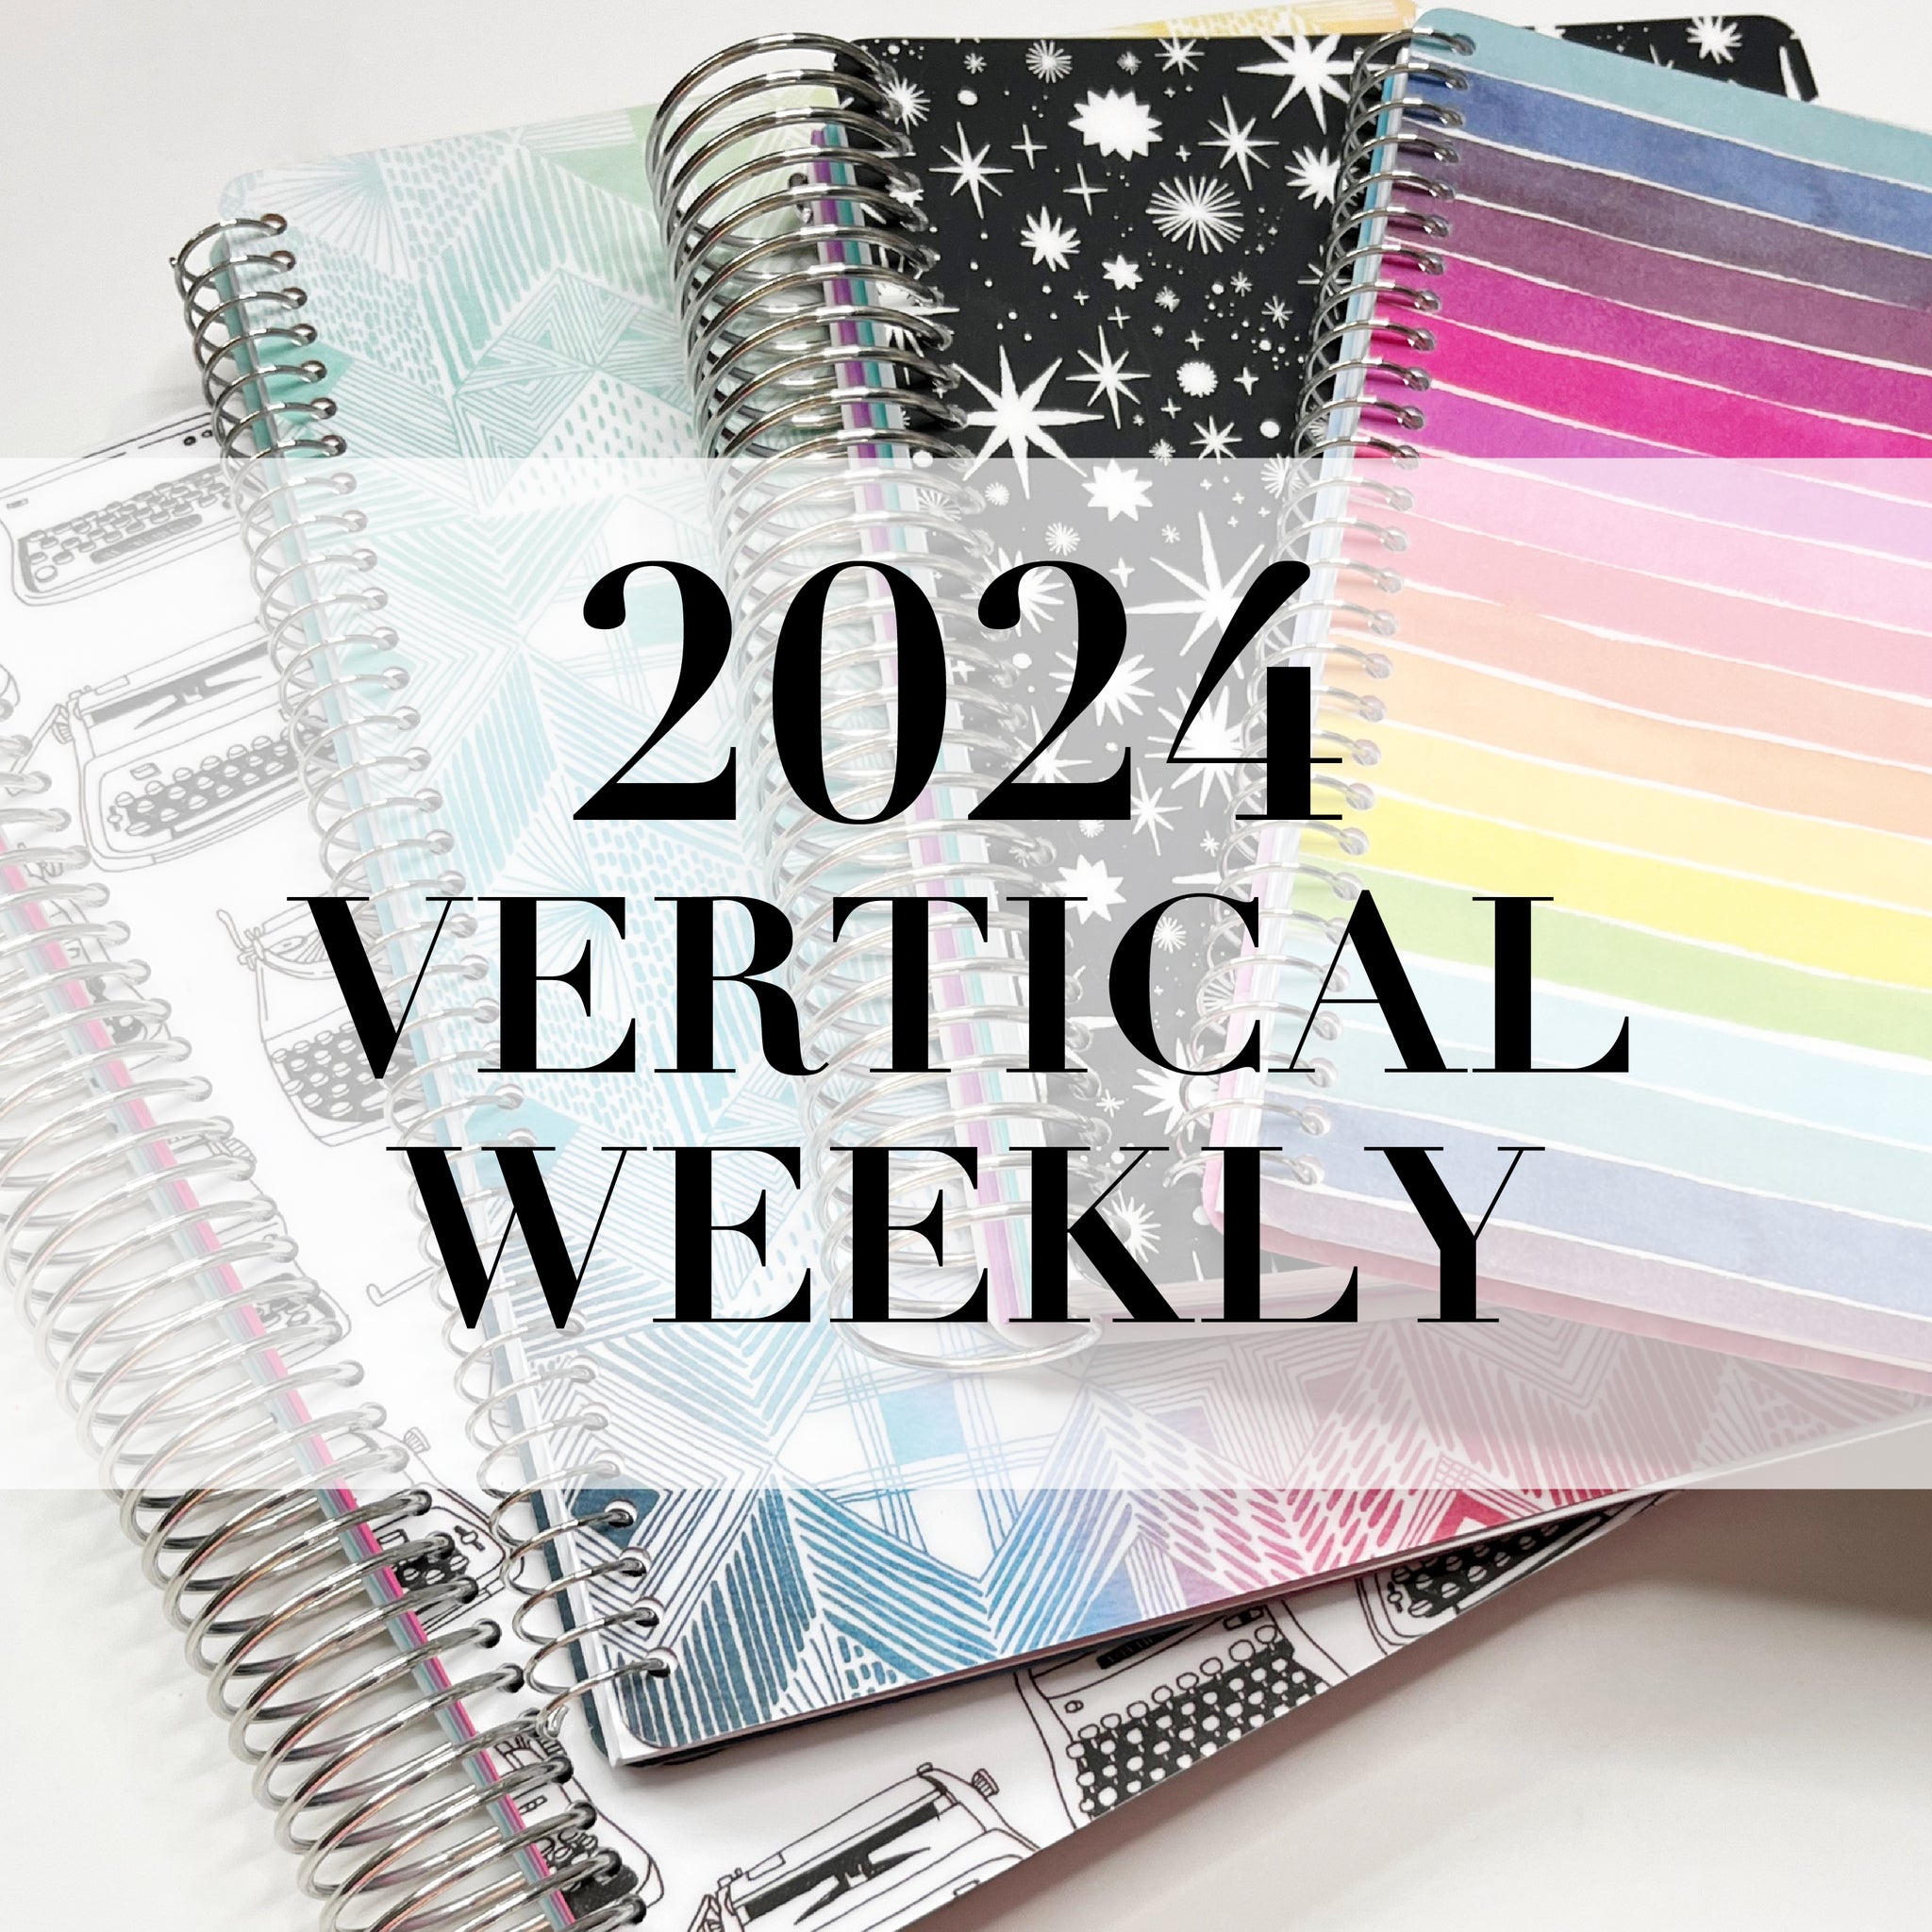 2024 Vertical Weekly Agenda